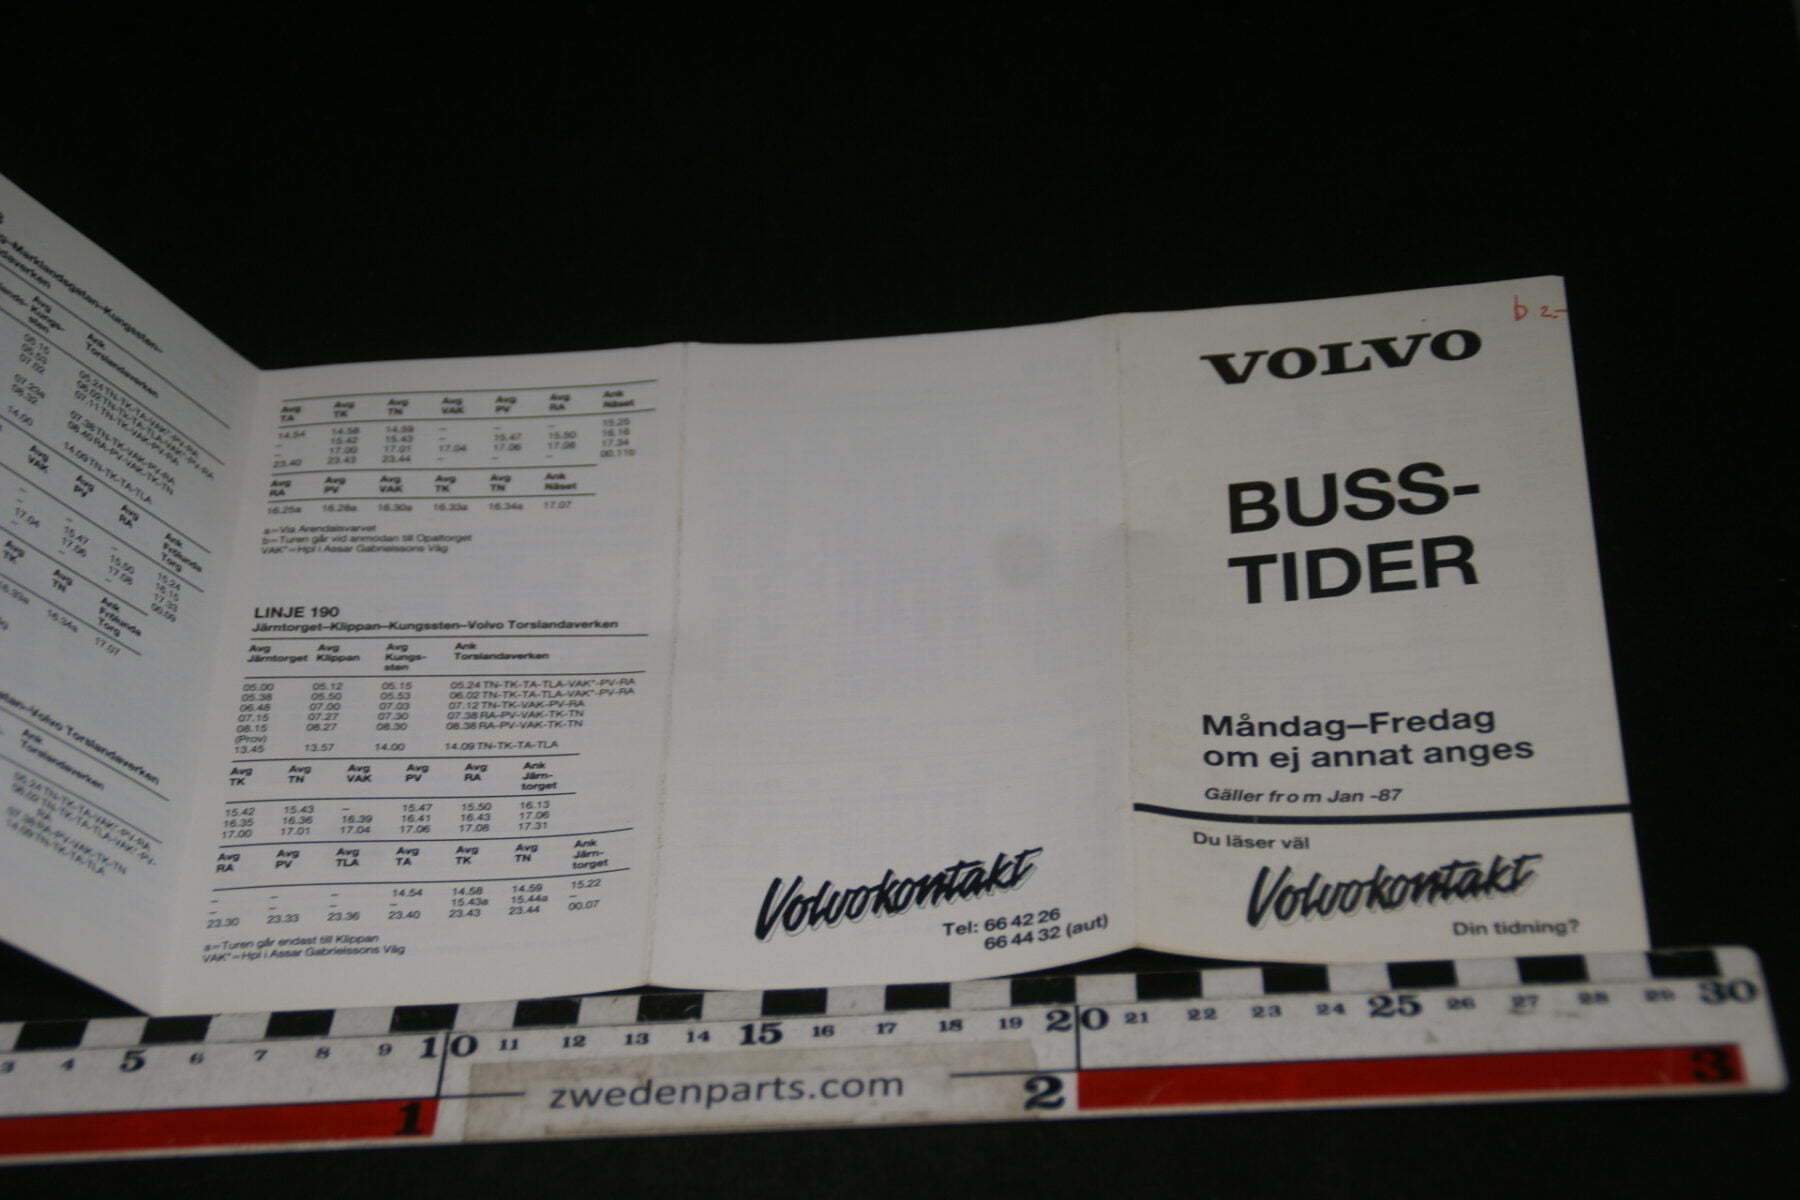 DSC06183 1987 boekje Volvo Busstider, Svenska-b2494417